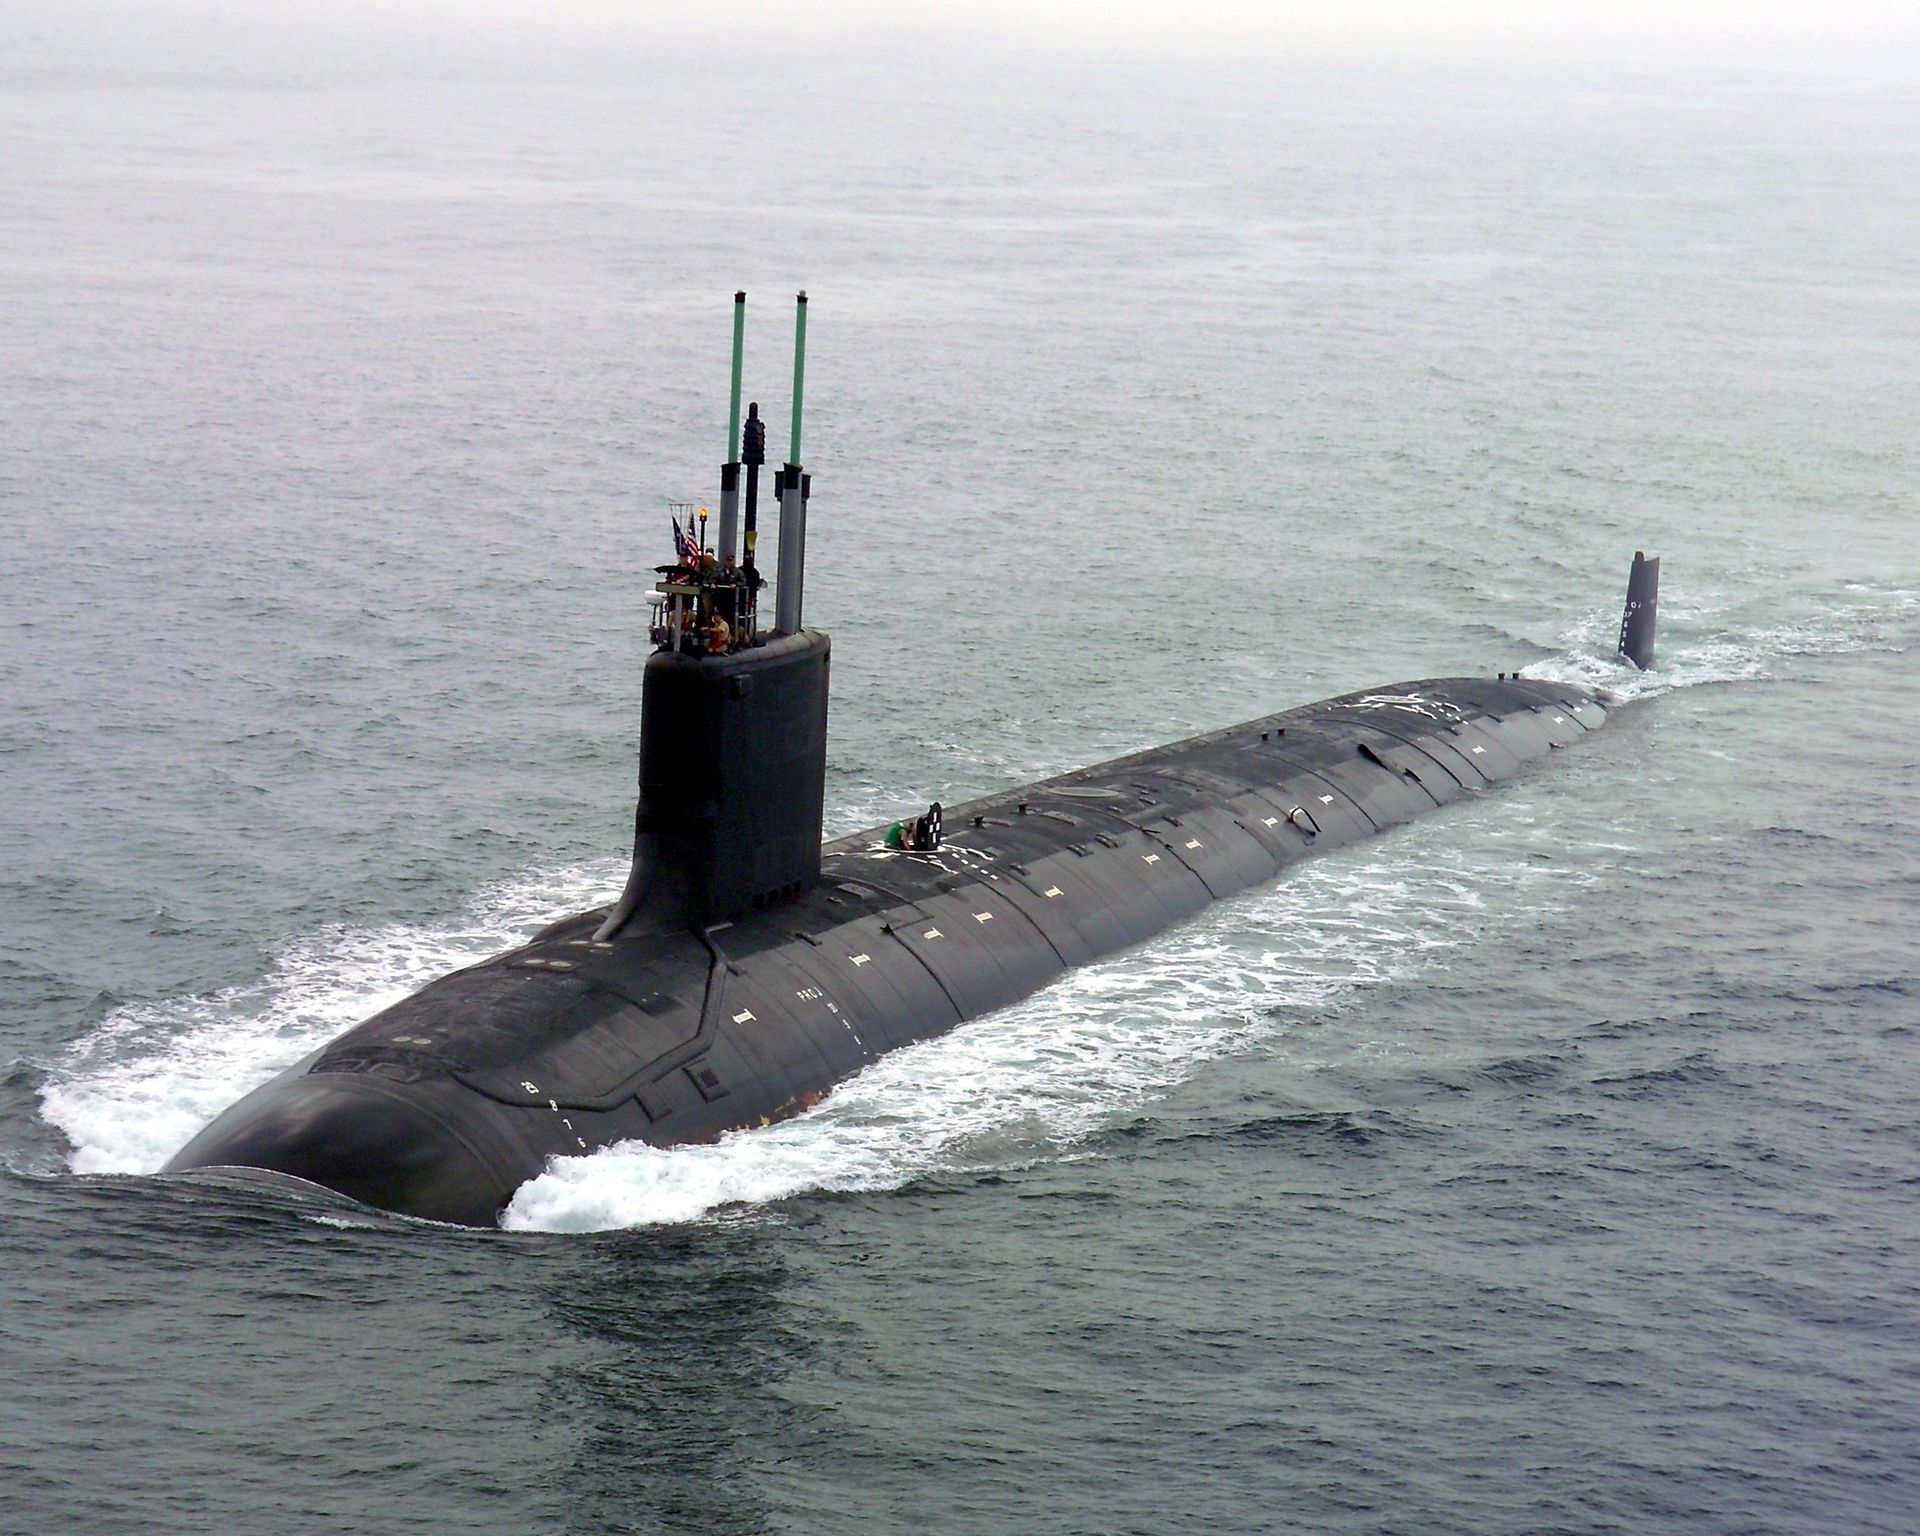 对法国来说，澳军一开始就要求新潜艇能兼容美军弗吉尼亚级潜艇相关设备的要求而今已成为一种提示。澳方在2019年后多次因项目进展吹毛求疵的态度也可以理解。而今，澳方需要等待至少20年来迎接这艘新潜艇。（维基百科公有领域）